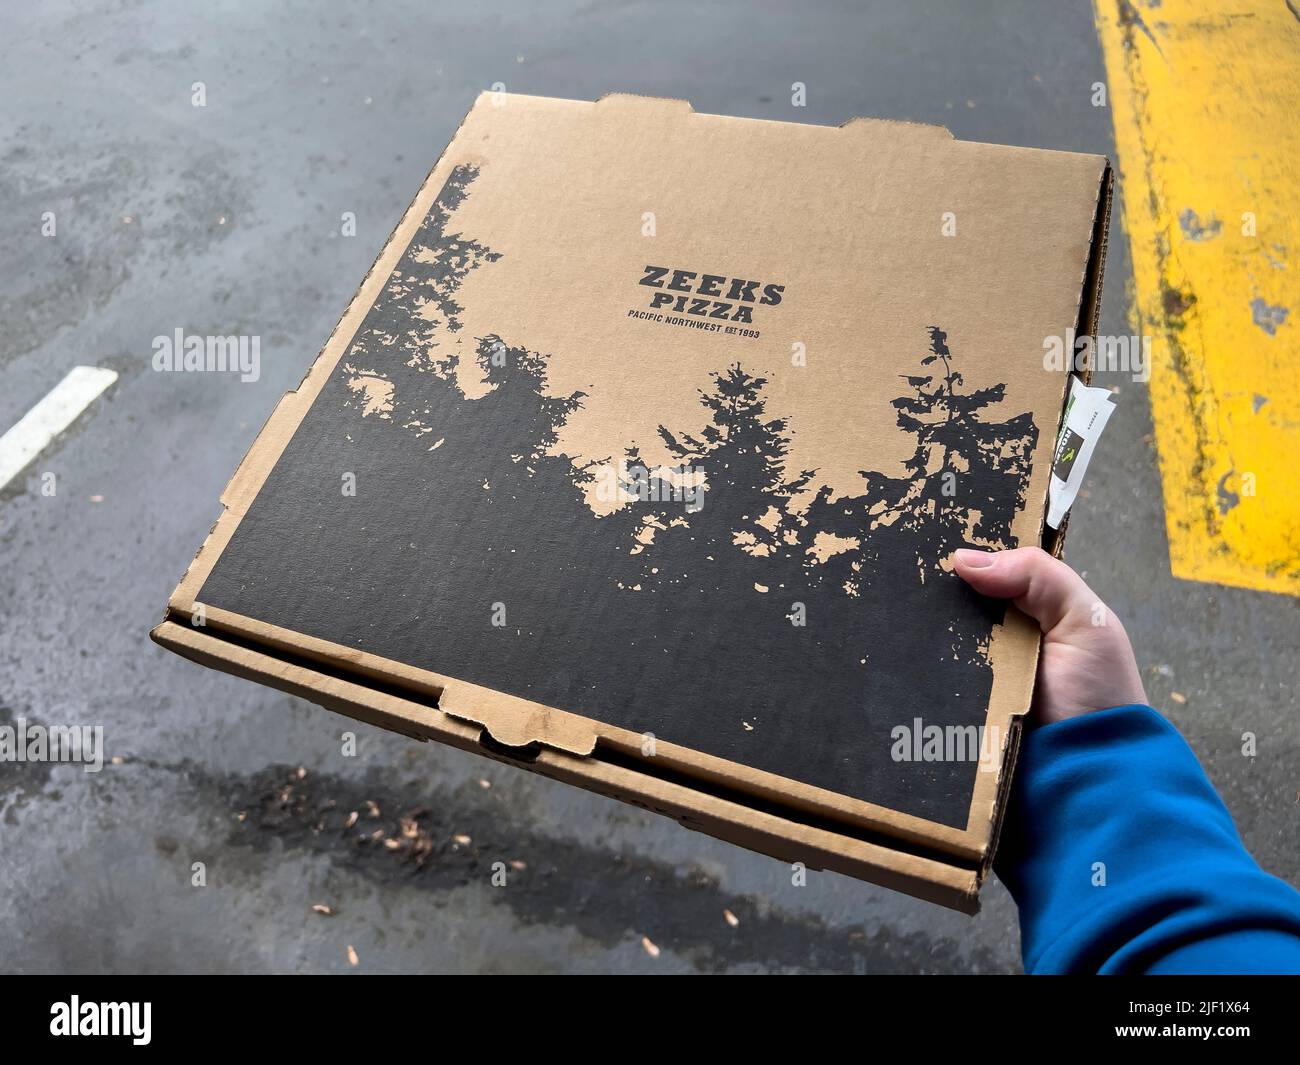 Seattle, WA USA - vers mai 2022 : vue rapprochée d'une personne tenant une boîte à pizza Zeek dans un parking. Banque D'Images